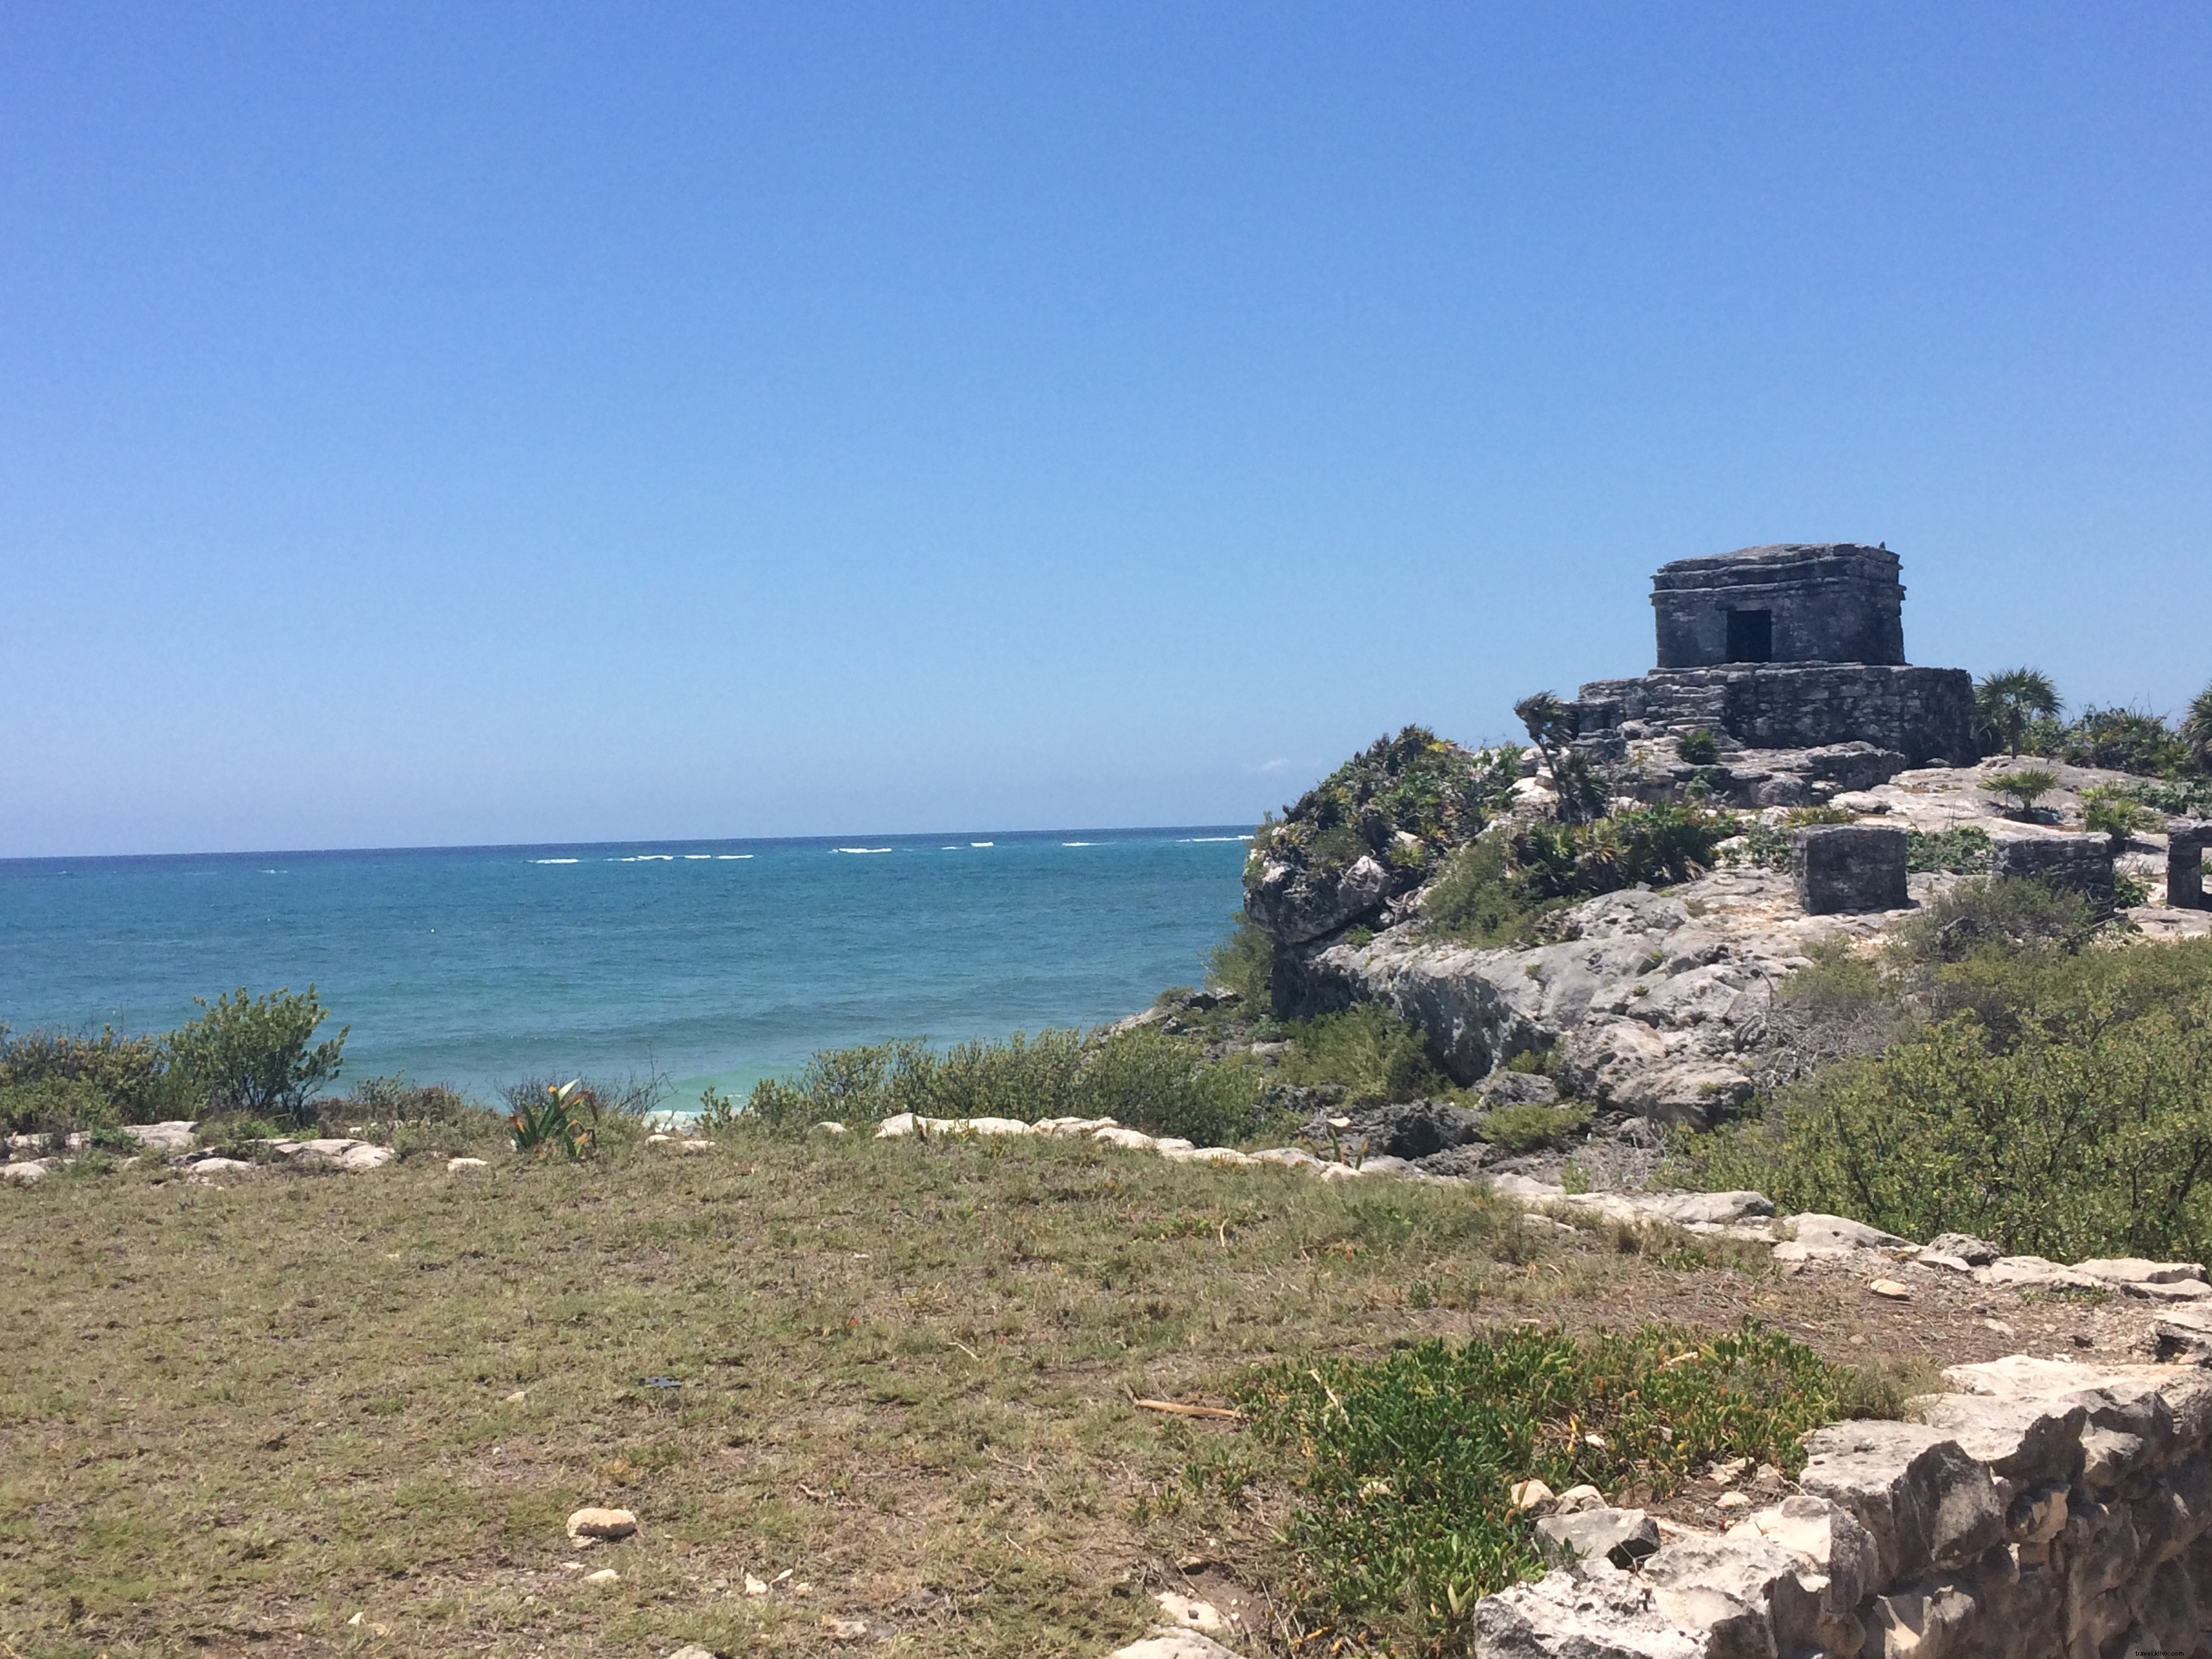 Fácil, Ventosas excursiones de un día desde Cancún 